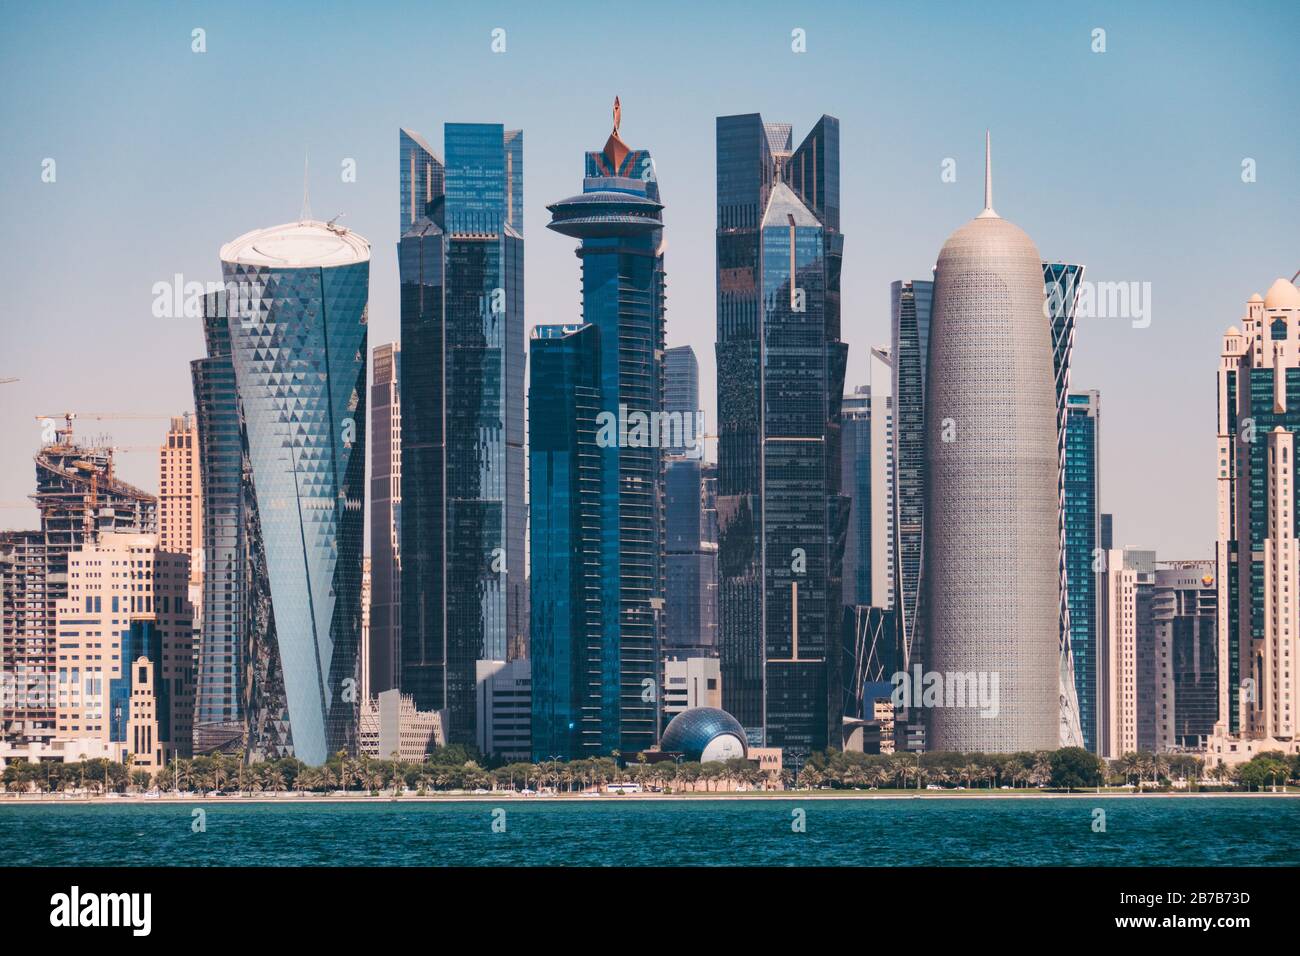 Die verschiedenen und exzentrisch gestalteten Gebäude der Doha Financial Center Skyline, wie im Oktober 2019 gesehen Stockfoto